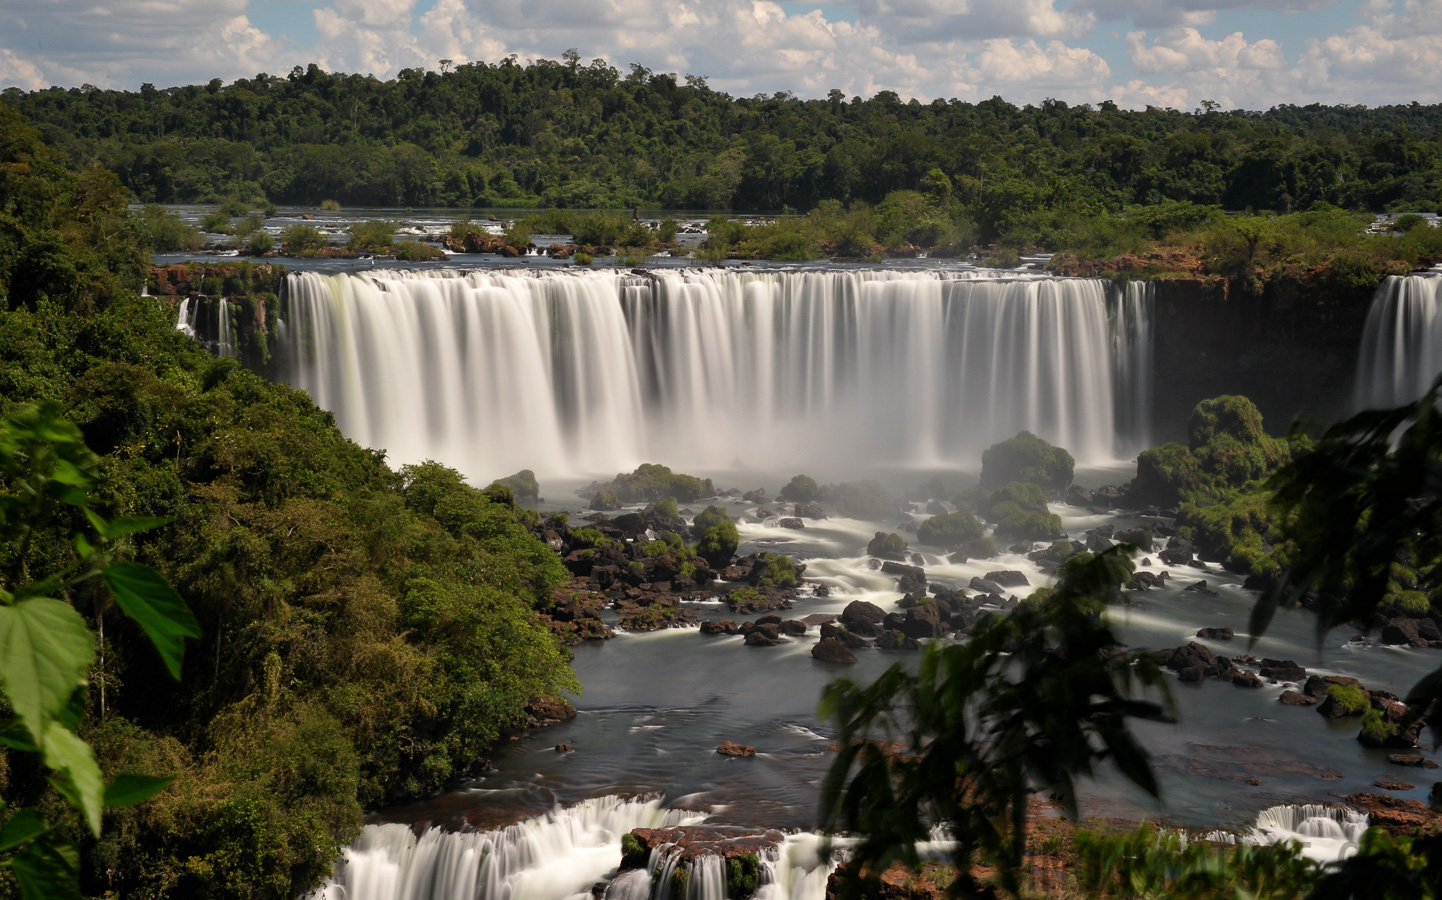 Cataratas del Iguazu [62 mm, 10.0 sec at f / 22, ISO 400]